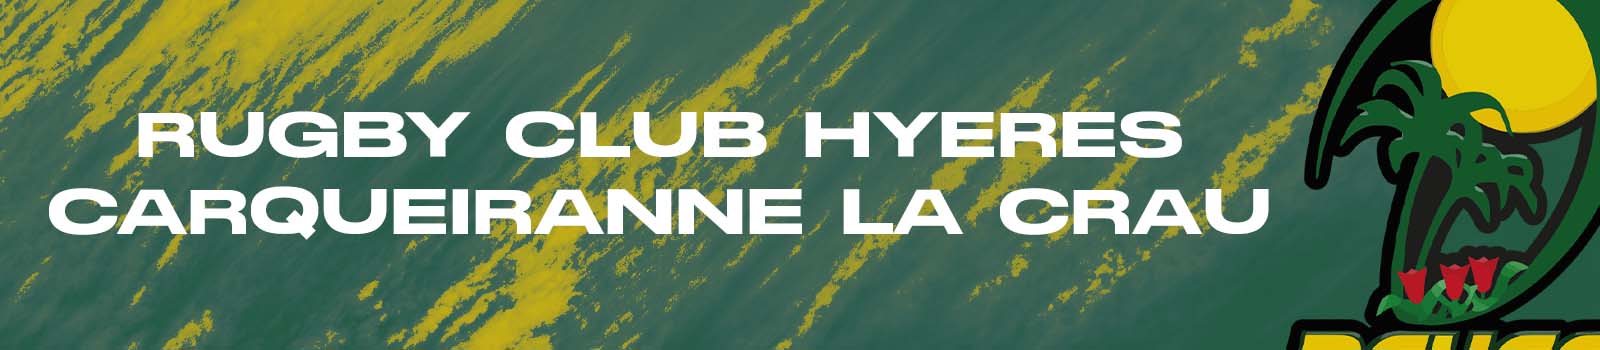 Rugby Club Hyeres Carqueiranne La Crau